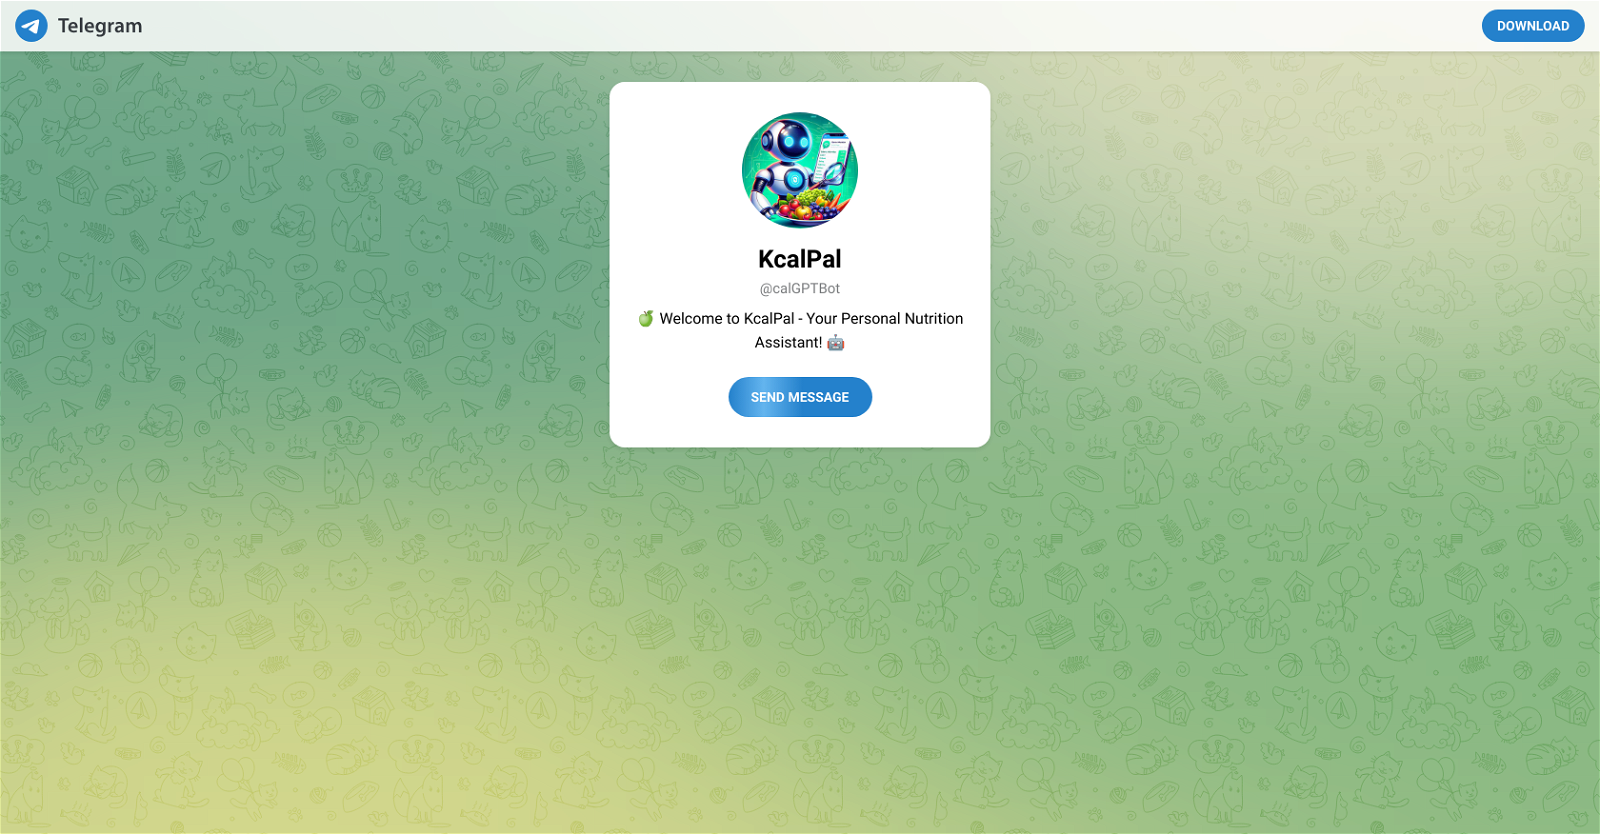 KcalPal website